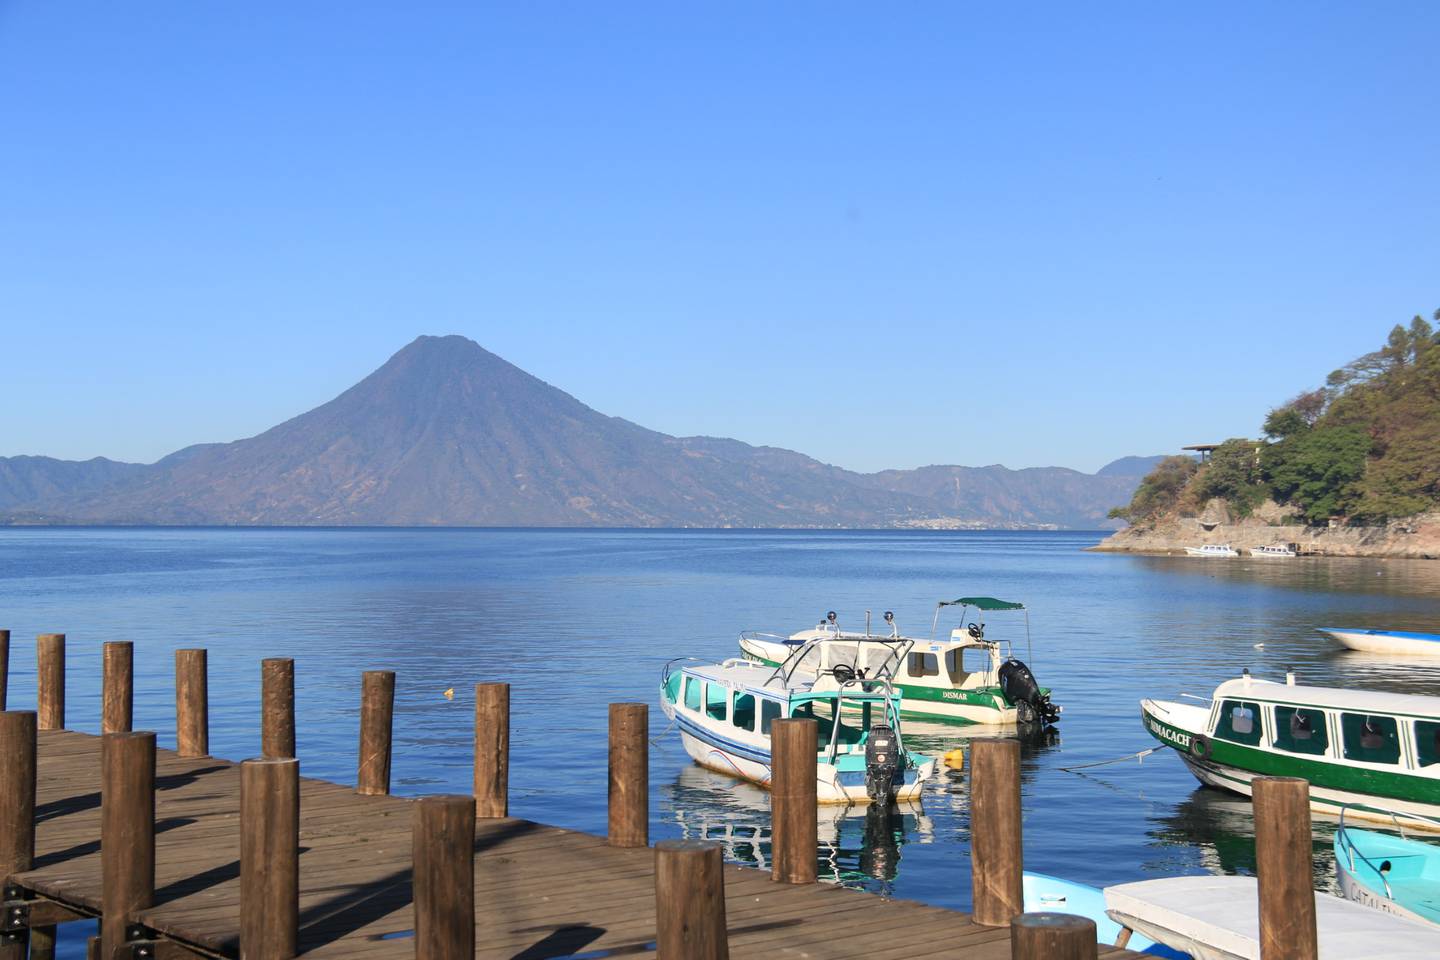 Otro de los destinos más buscados en Guatemala es Panajachel por su vista al lago.